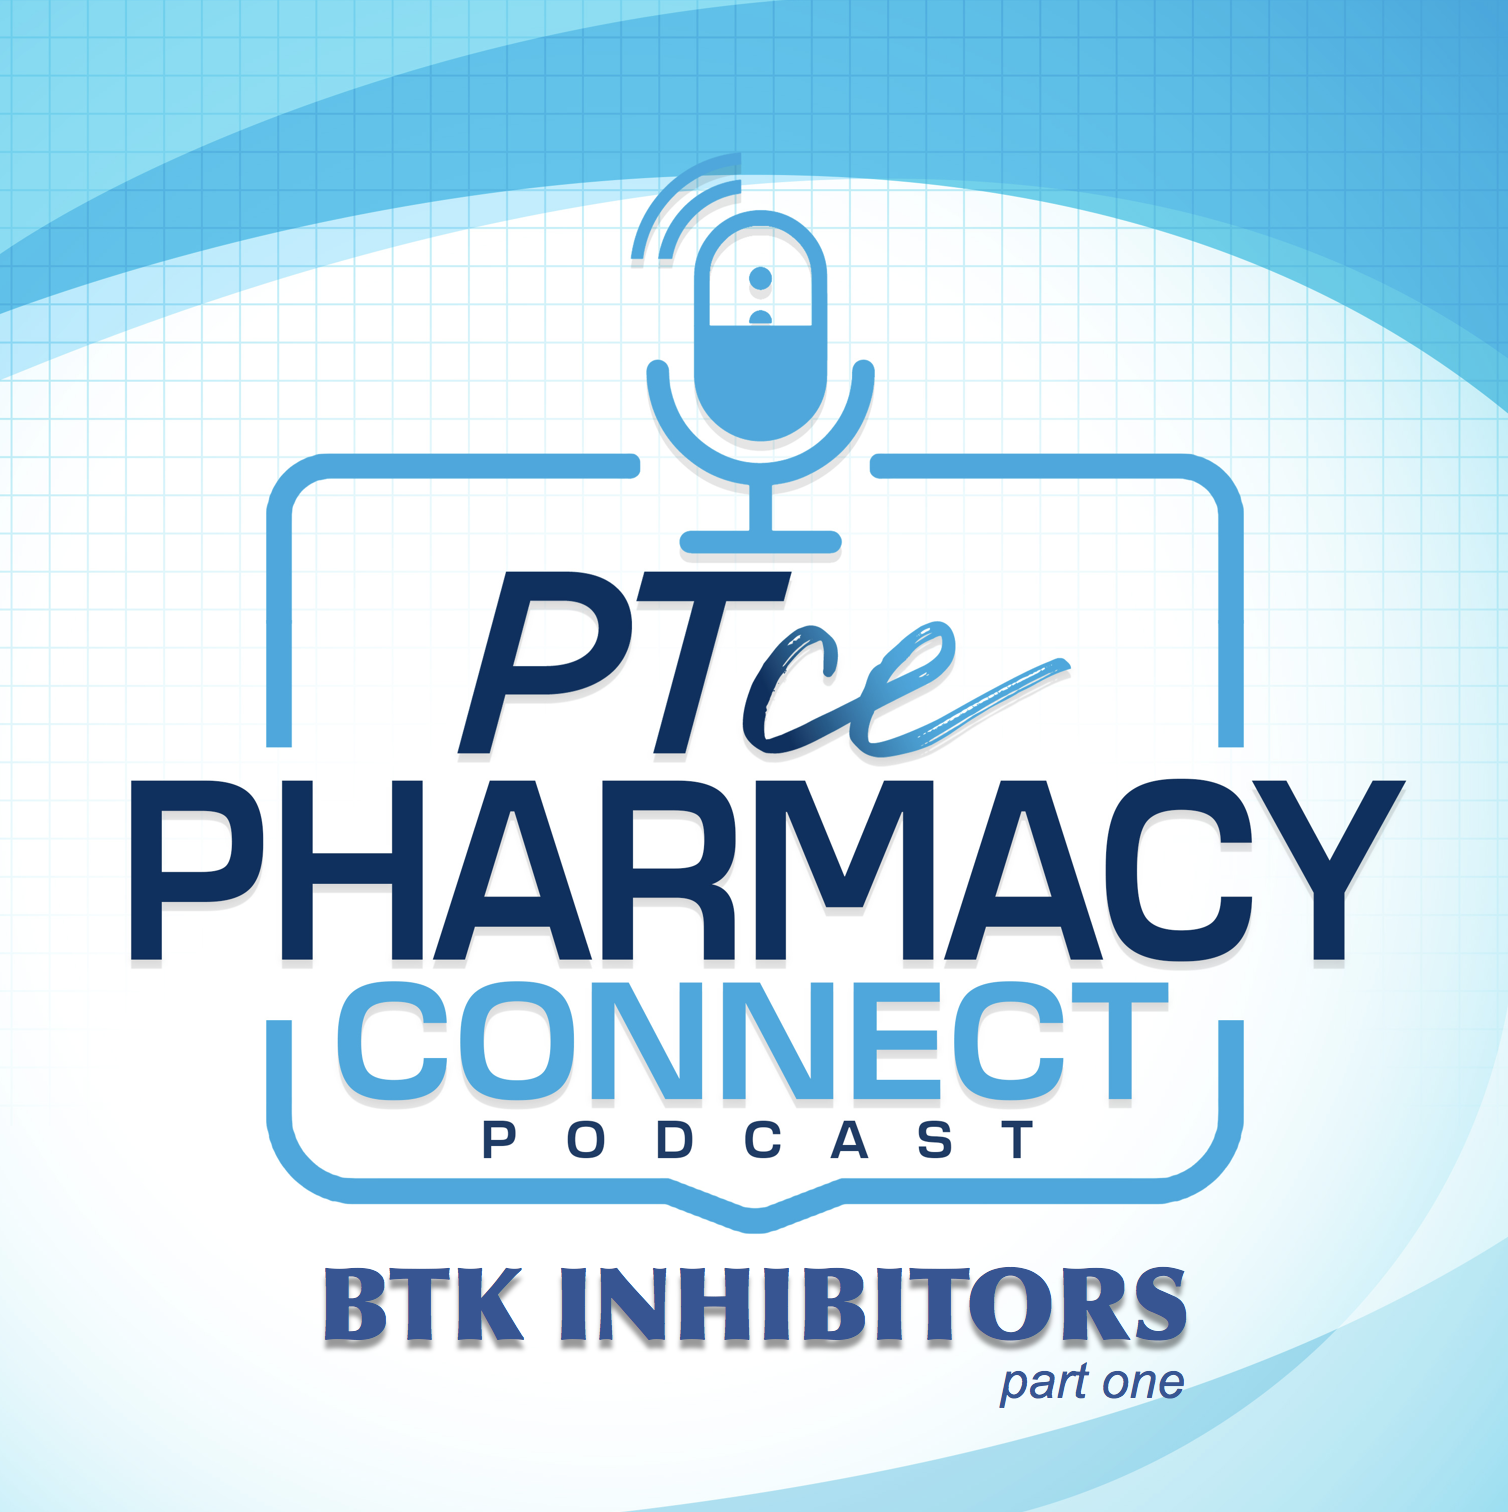 Optimizing Safety & Efficacy of BTK Inhibitors | PTCE Pharmacy Connect